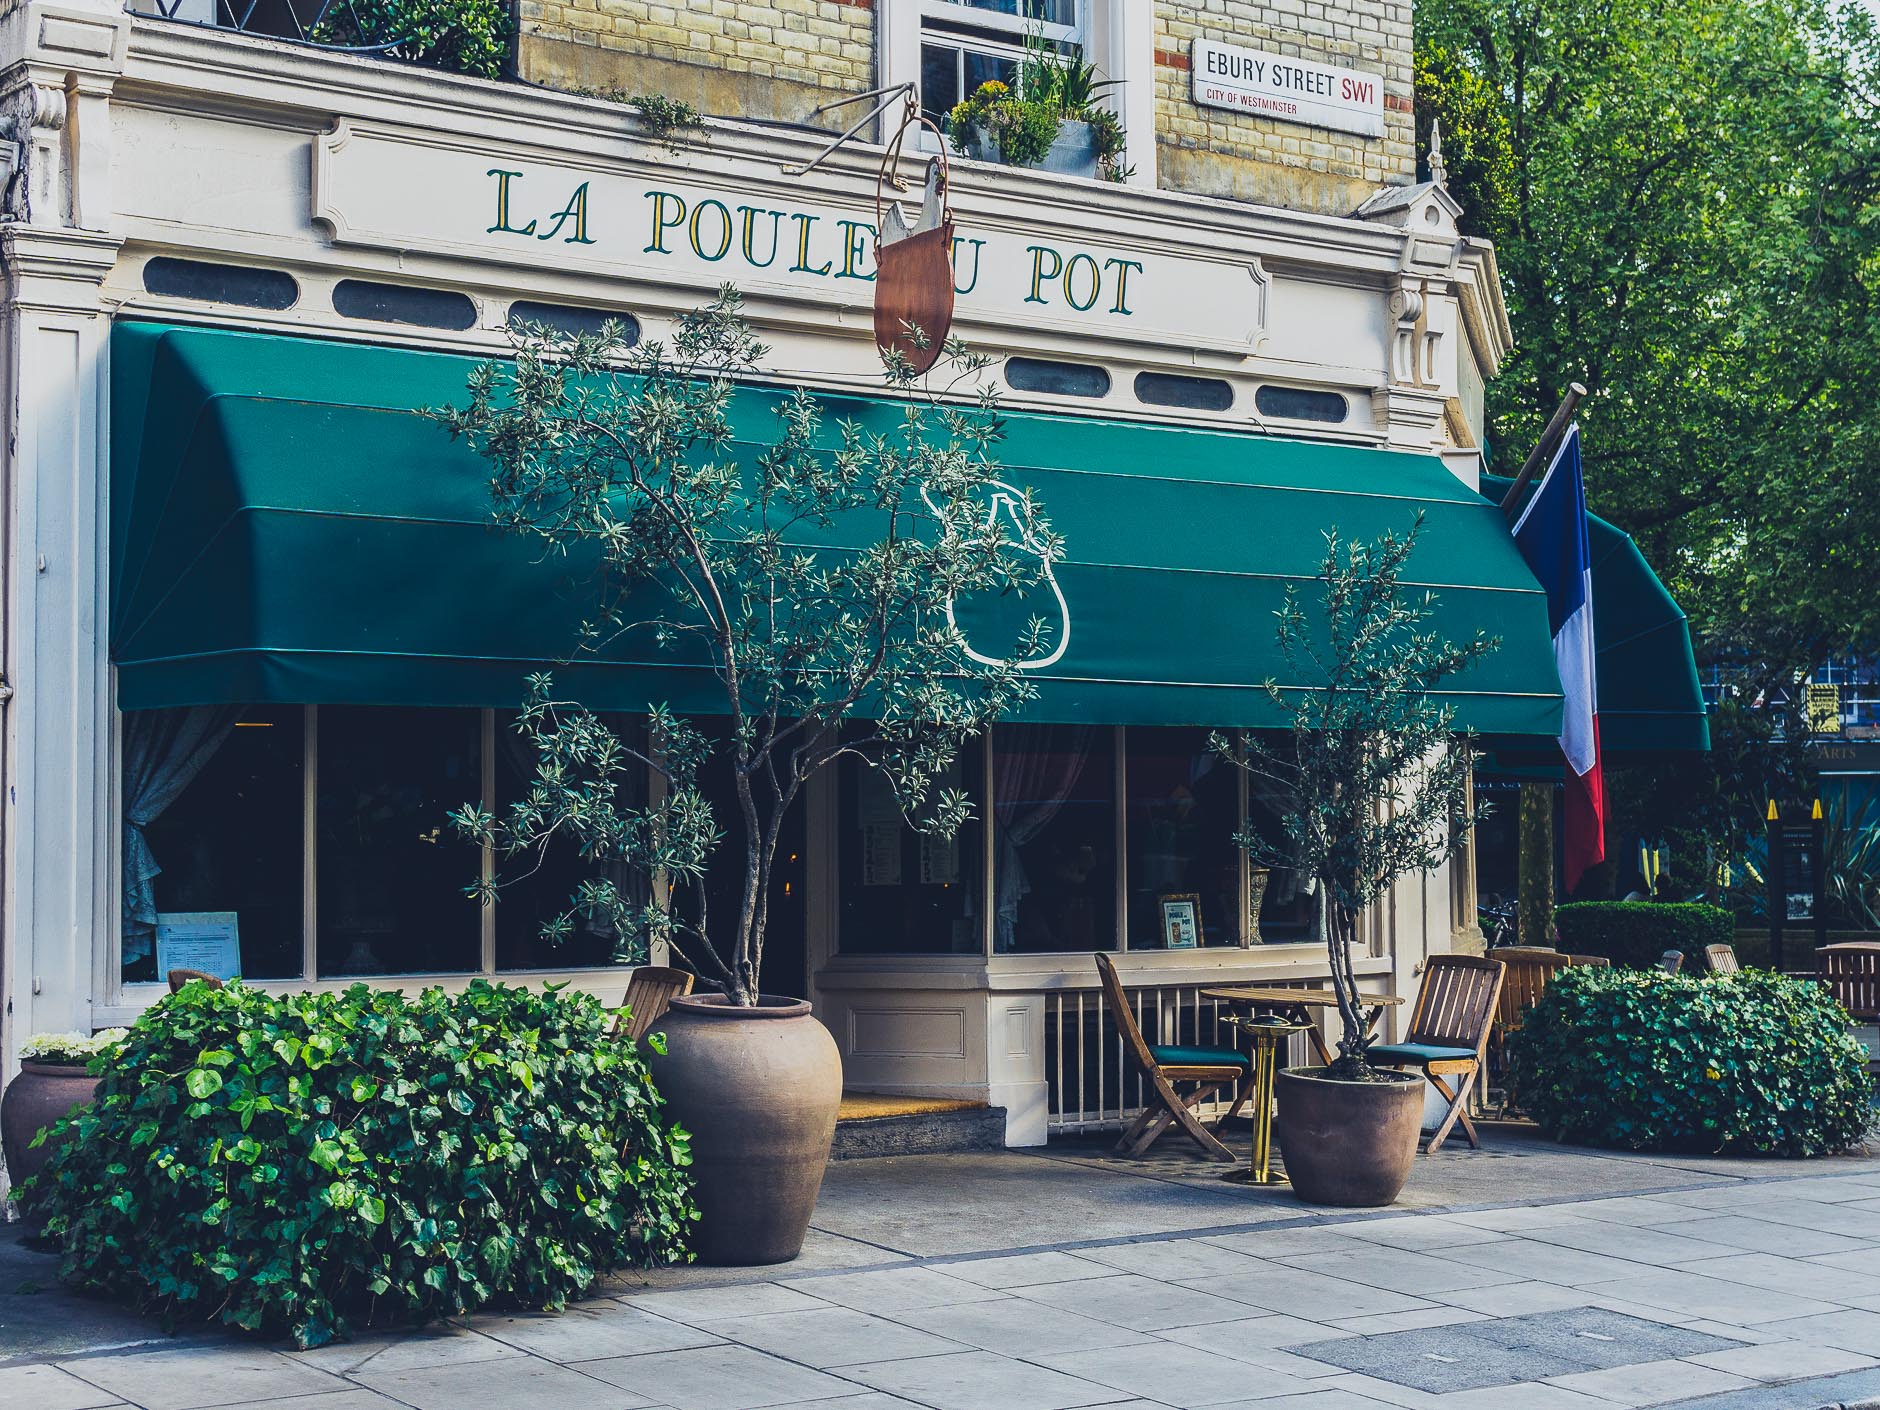 La Poule Au Pot Restaurant London